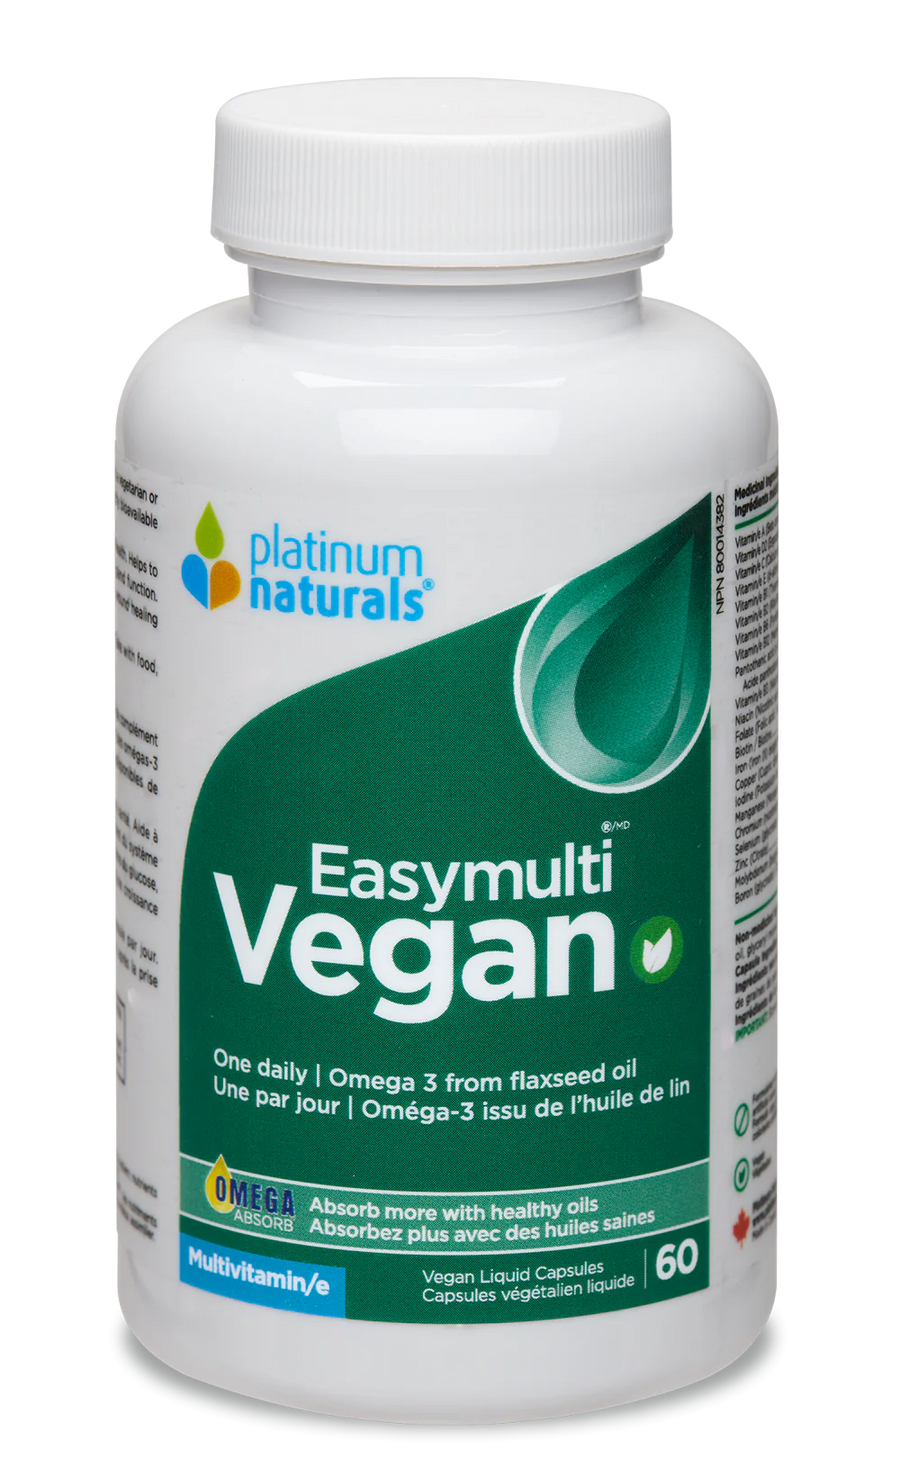 Platinum Naturals Easymulti Vegan 120 Veg. Liquid Capsules